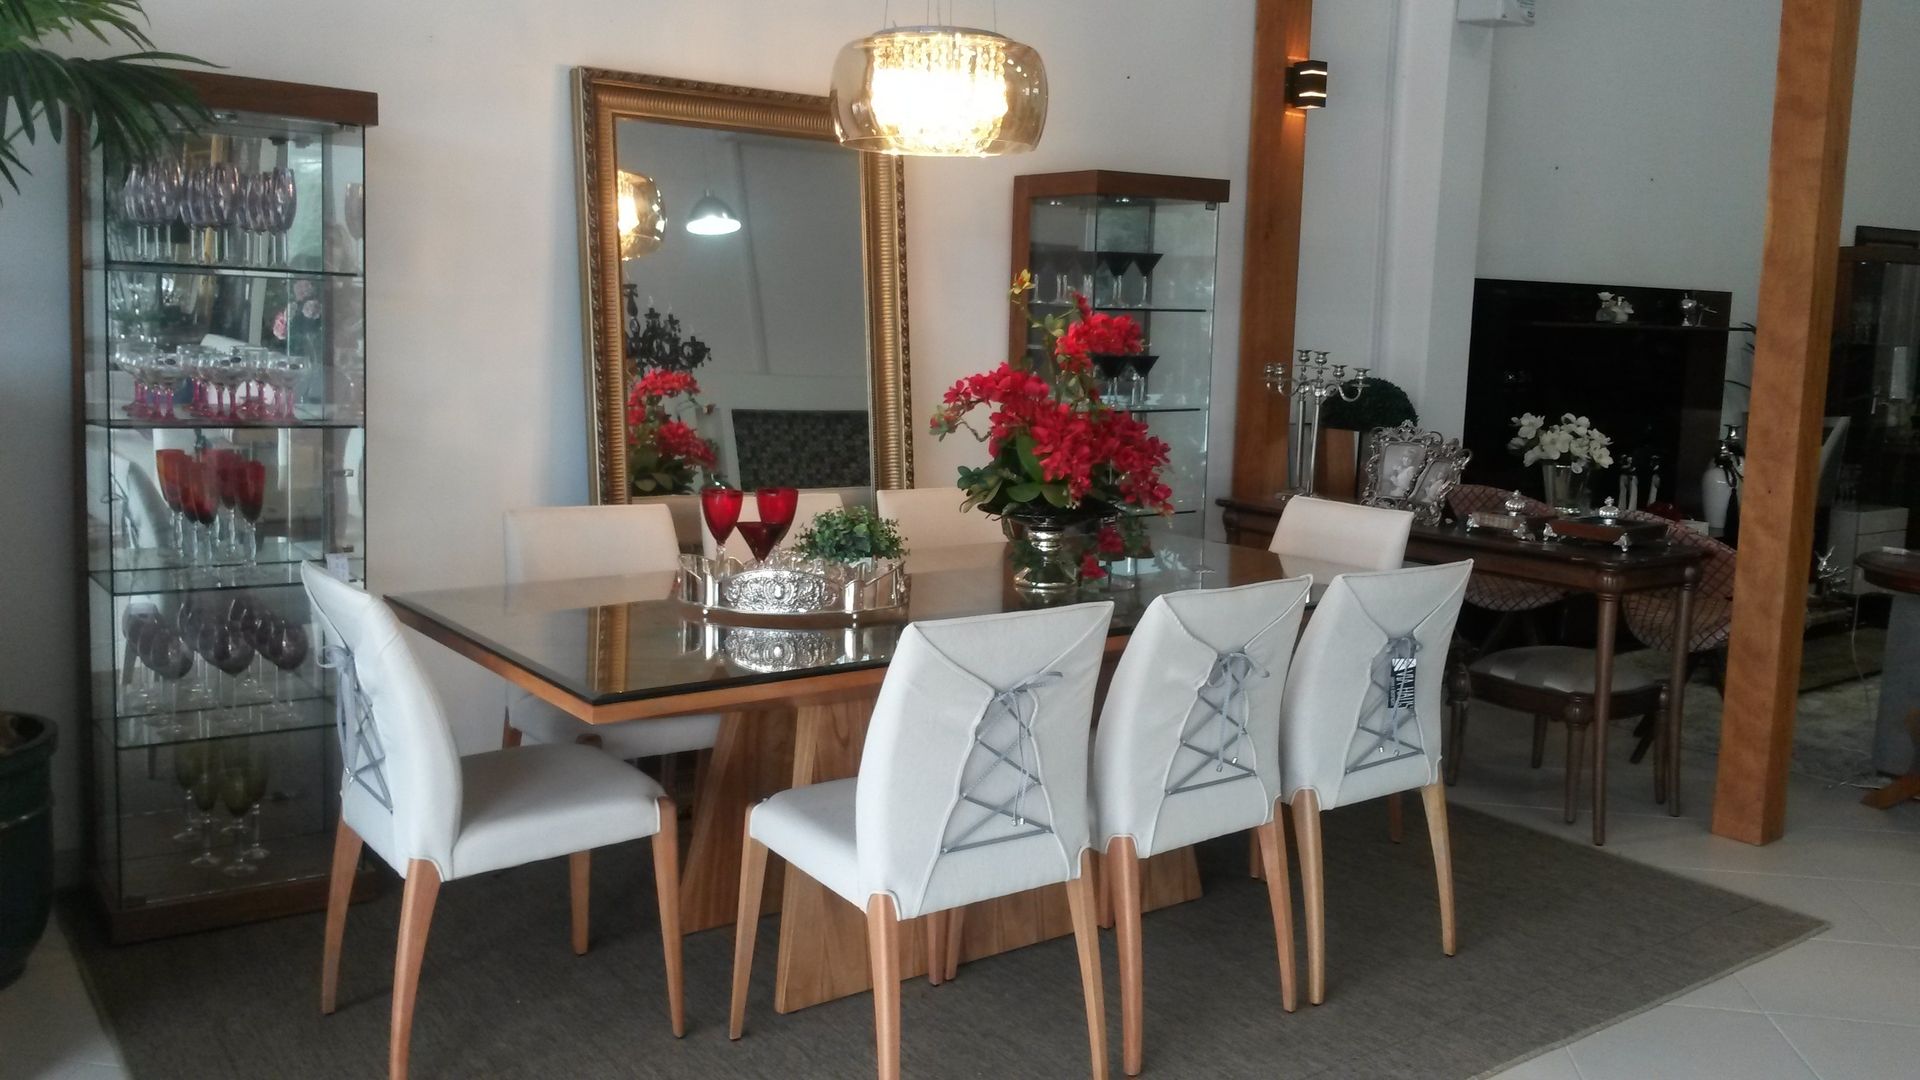 CADEIRAS COM DESIGN OUSADO, VIA HAUS VIA HAUS Modern dining room Tables